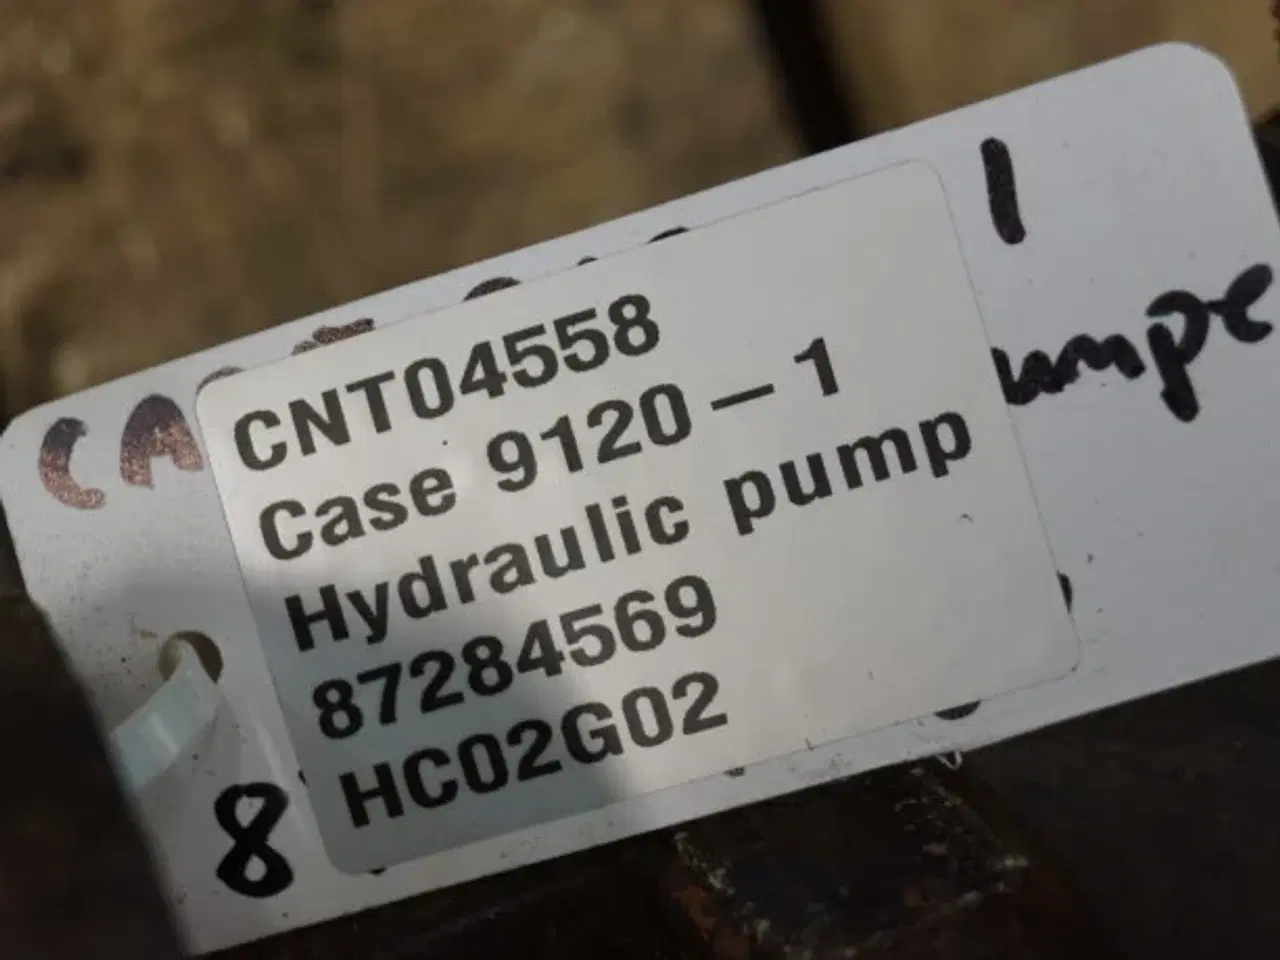 Billede 7 - Case 9120 Hydraulikpumpe 87284569